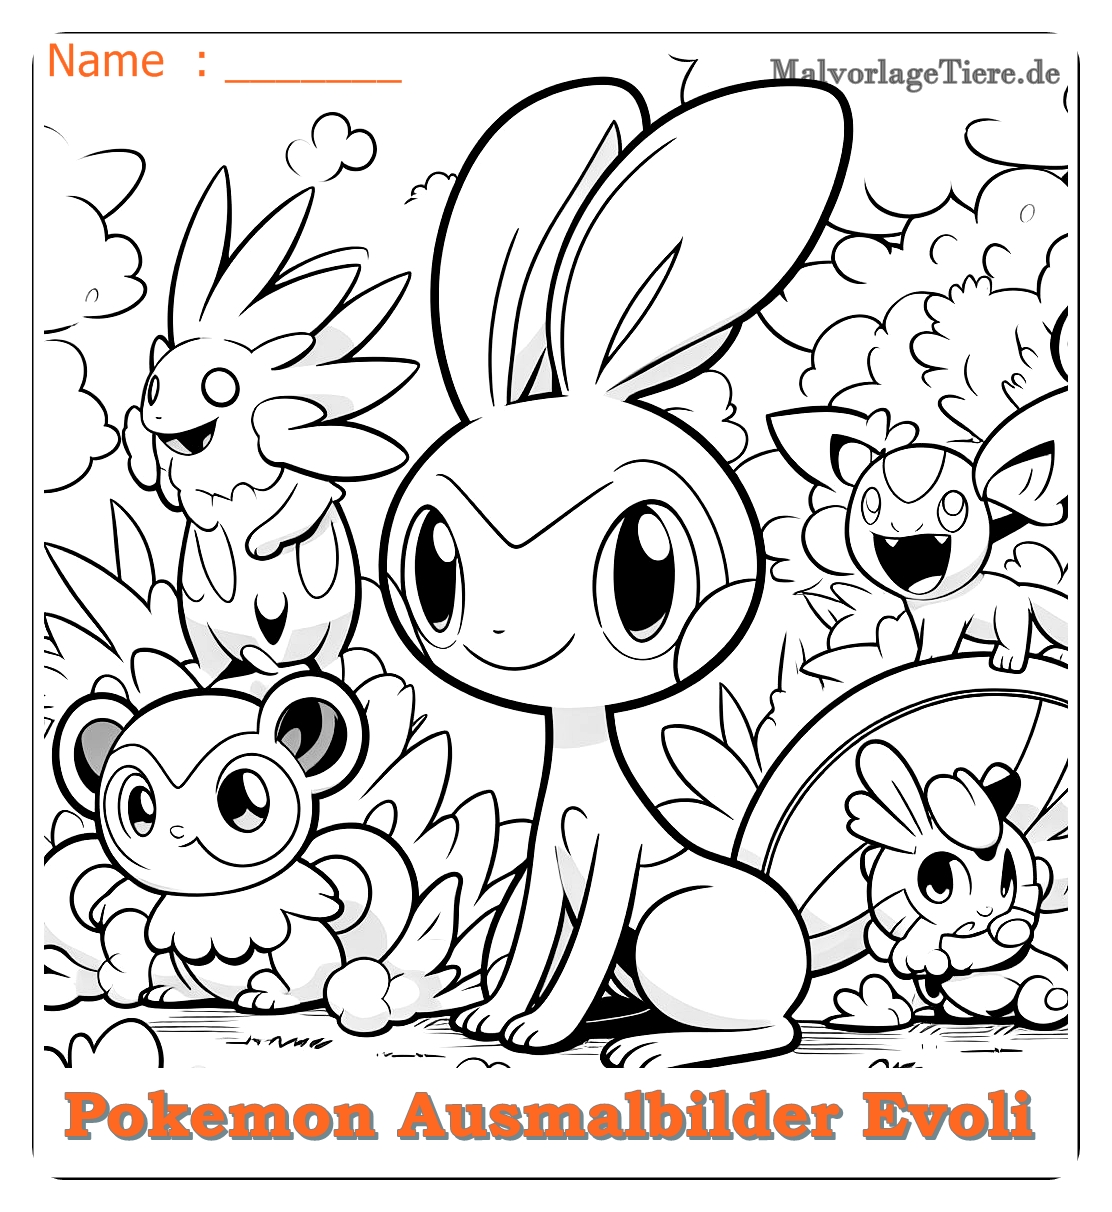 pokemon ausmalbilder evoli entwicklungen 06 by malvorlagetiere.de